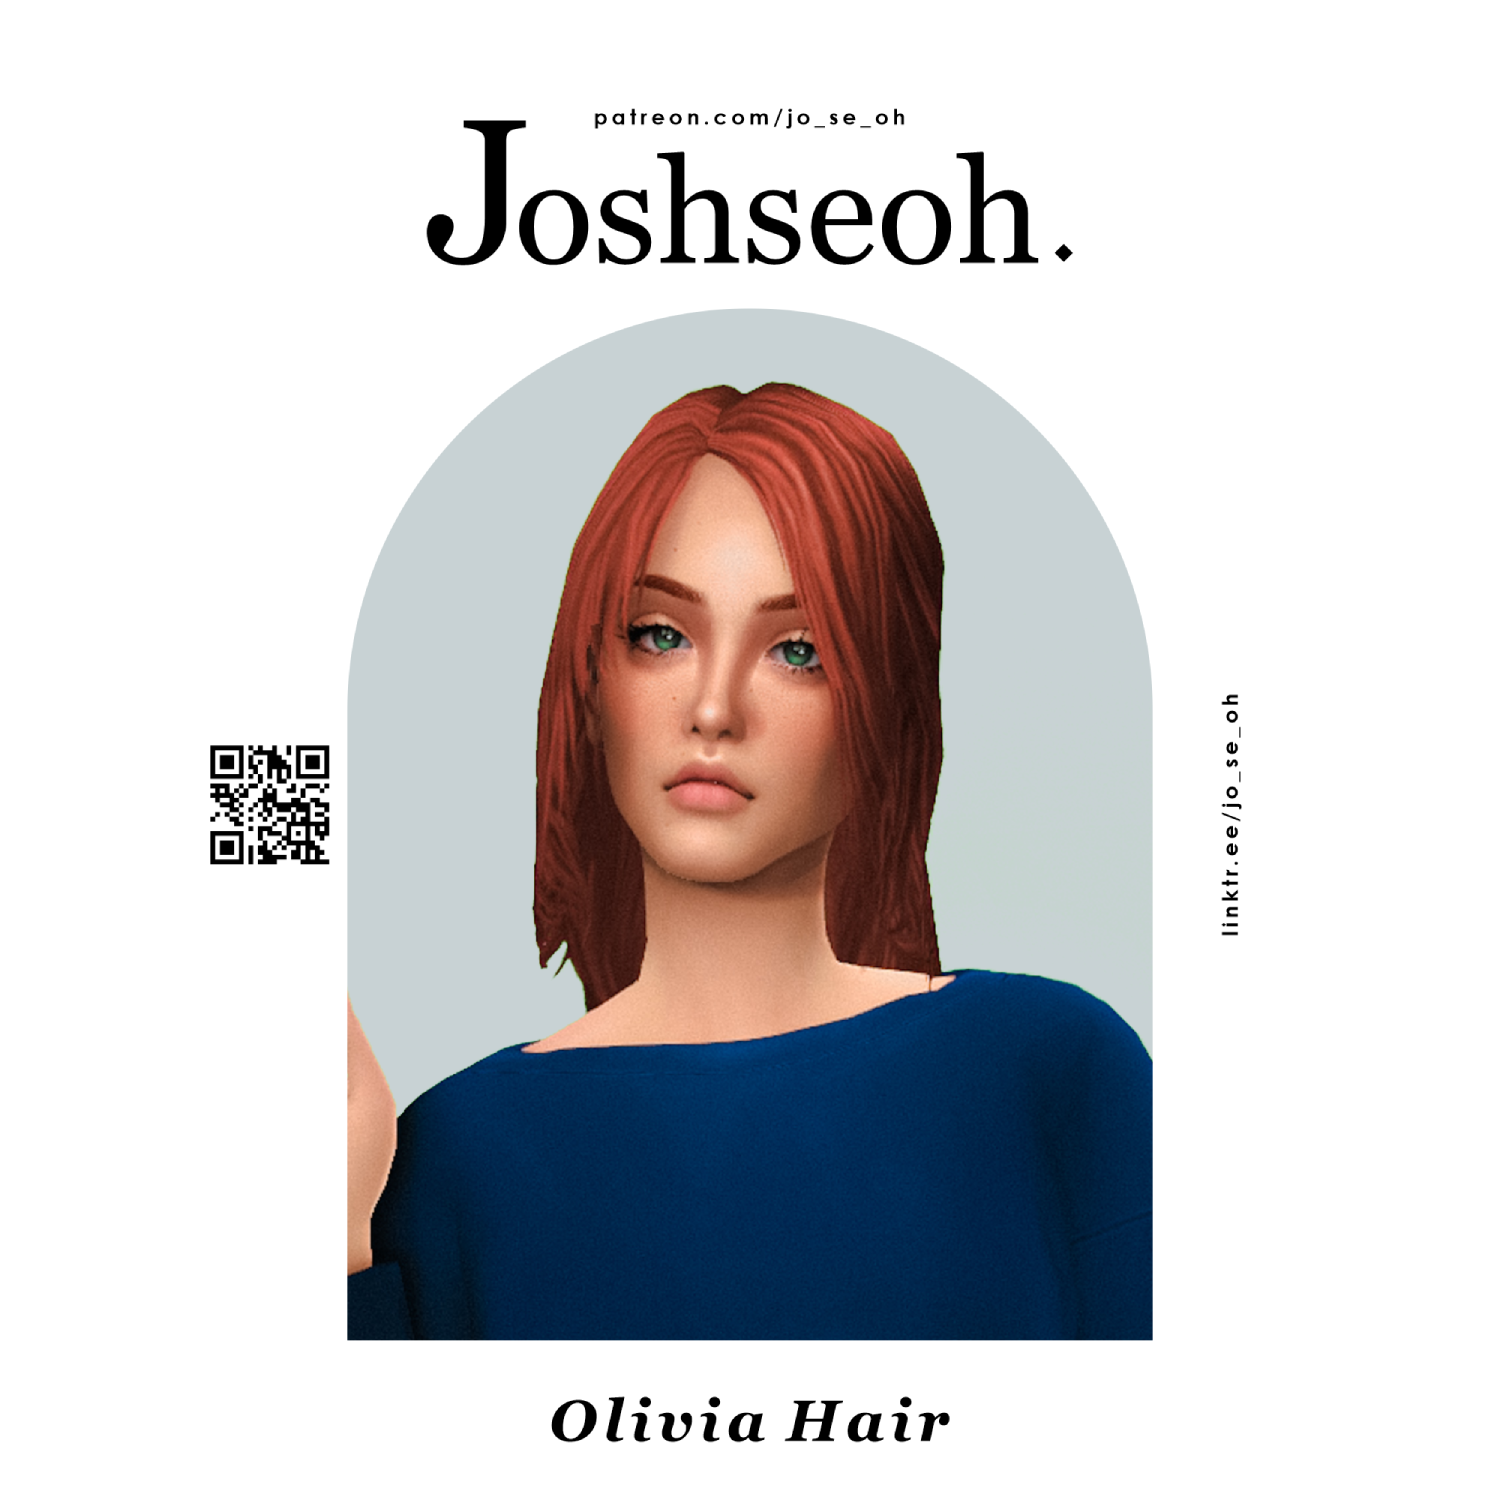 Olivia Hair (TS2 Conversion) - The Sims 4 Create a Sim - CurseForge